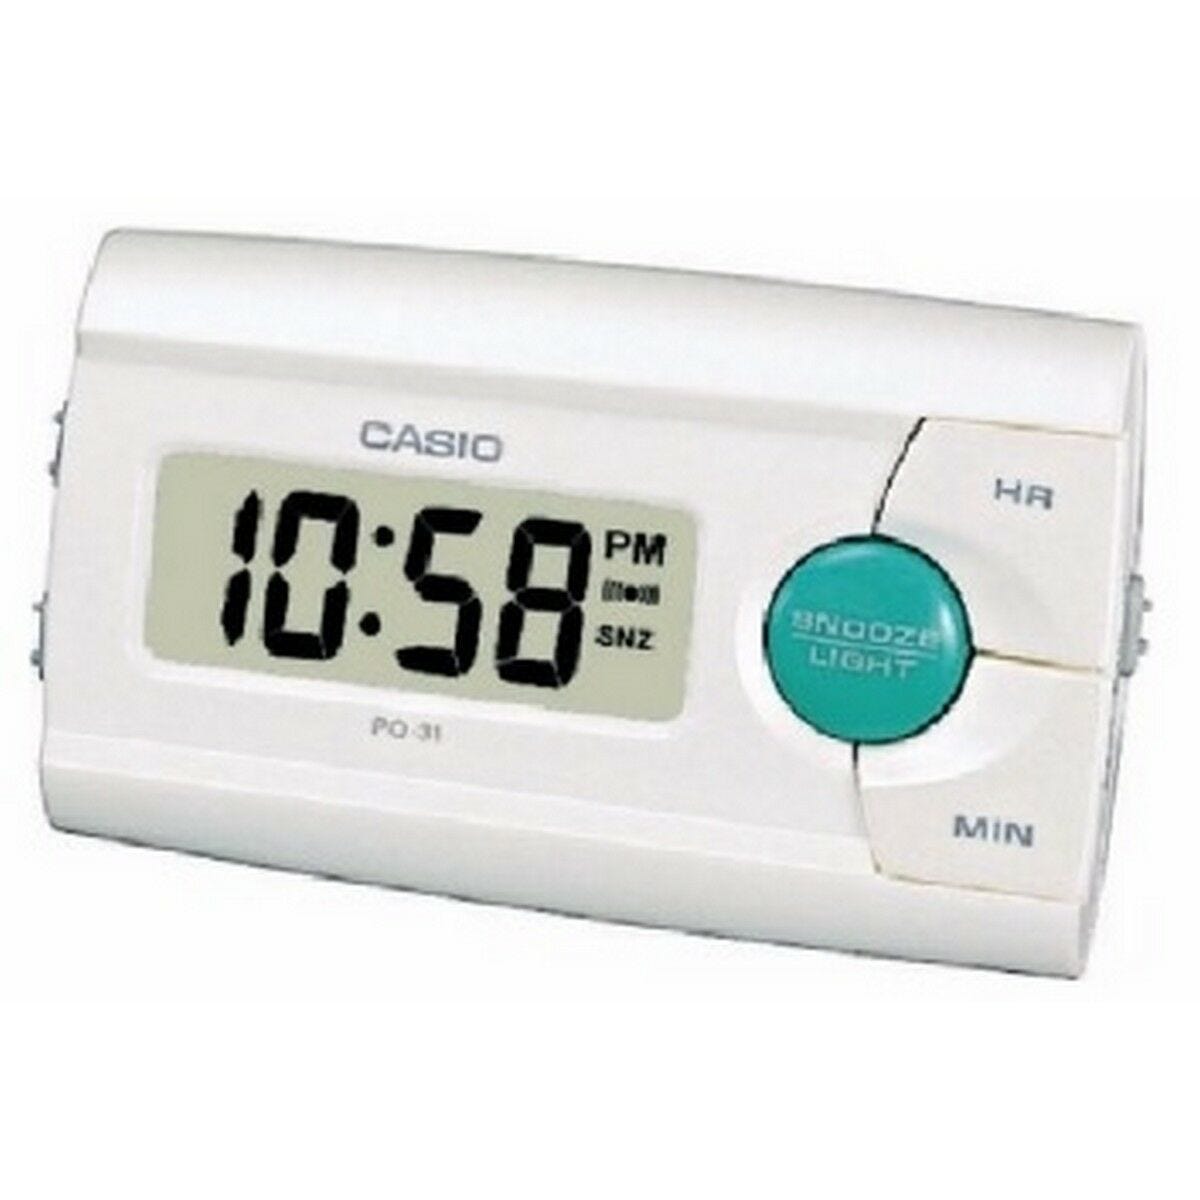 Reloj Despertador Casio PQ-31-7E